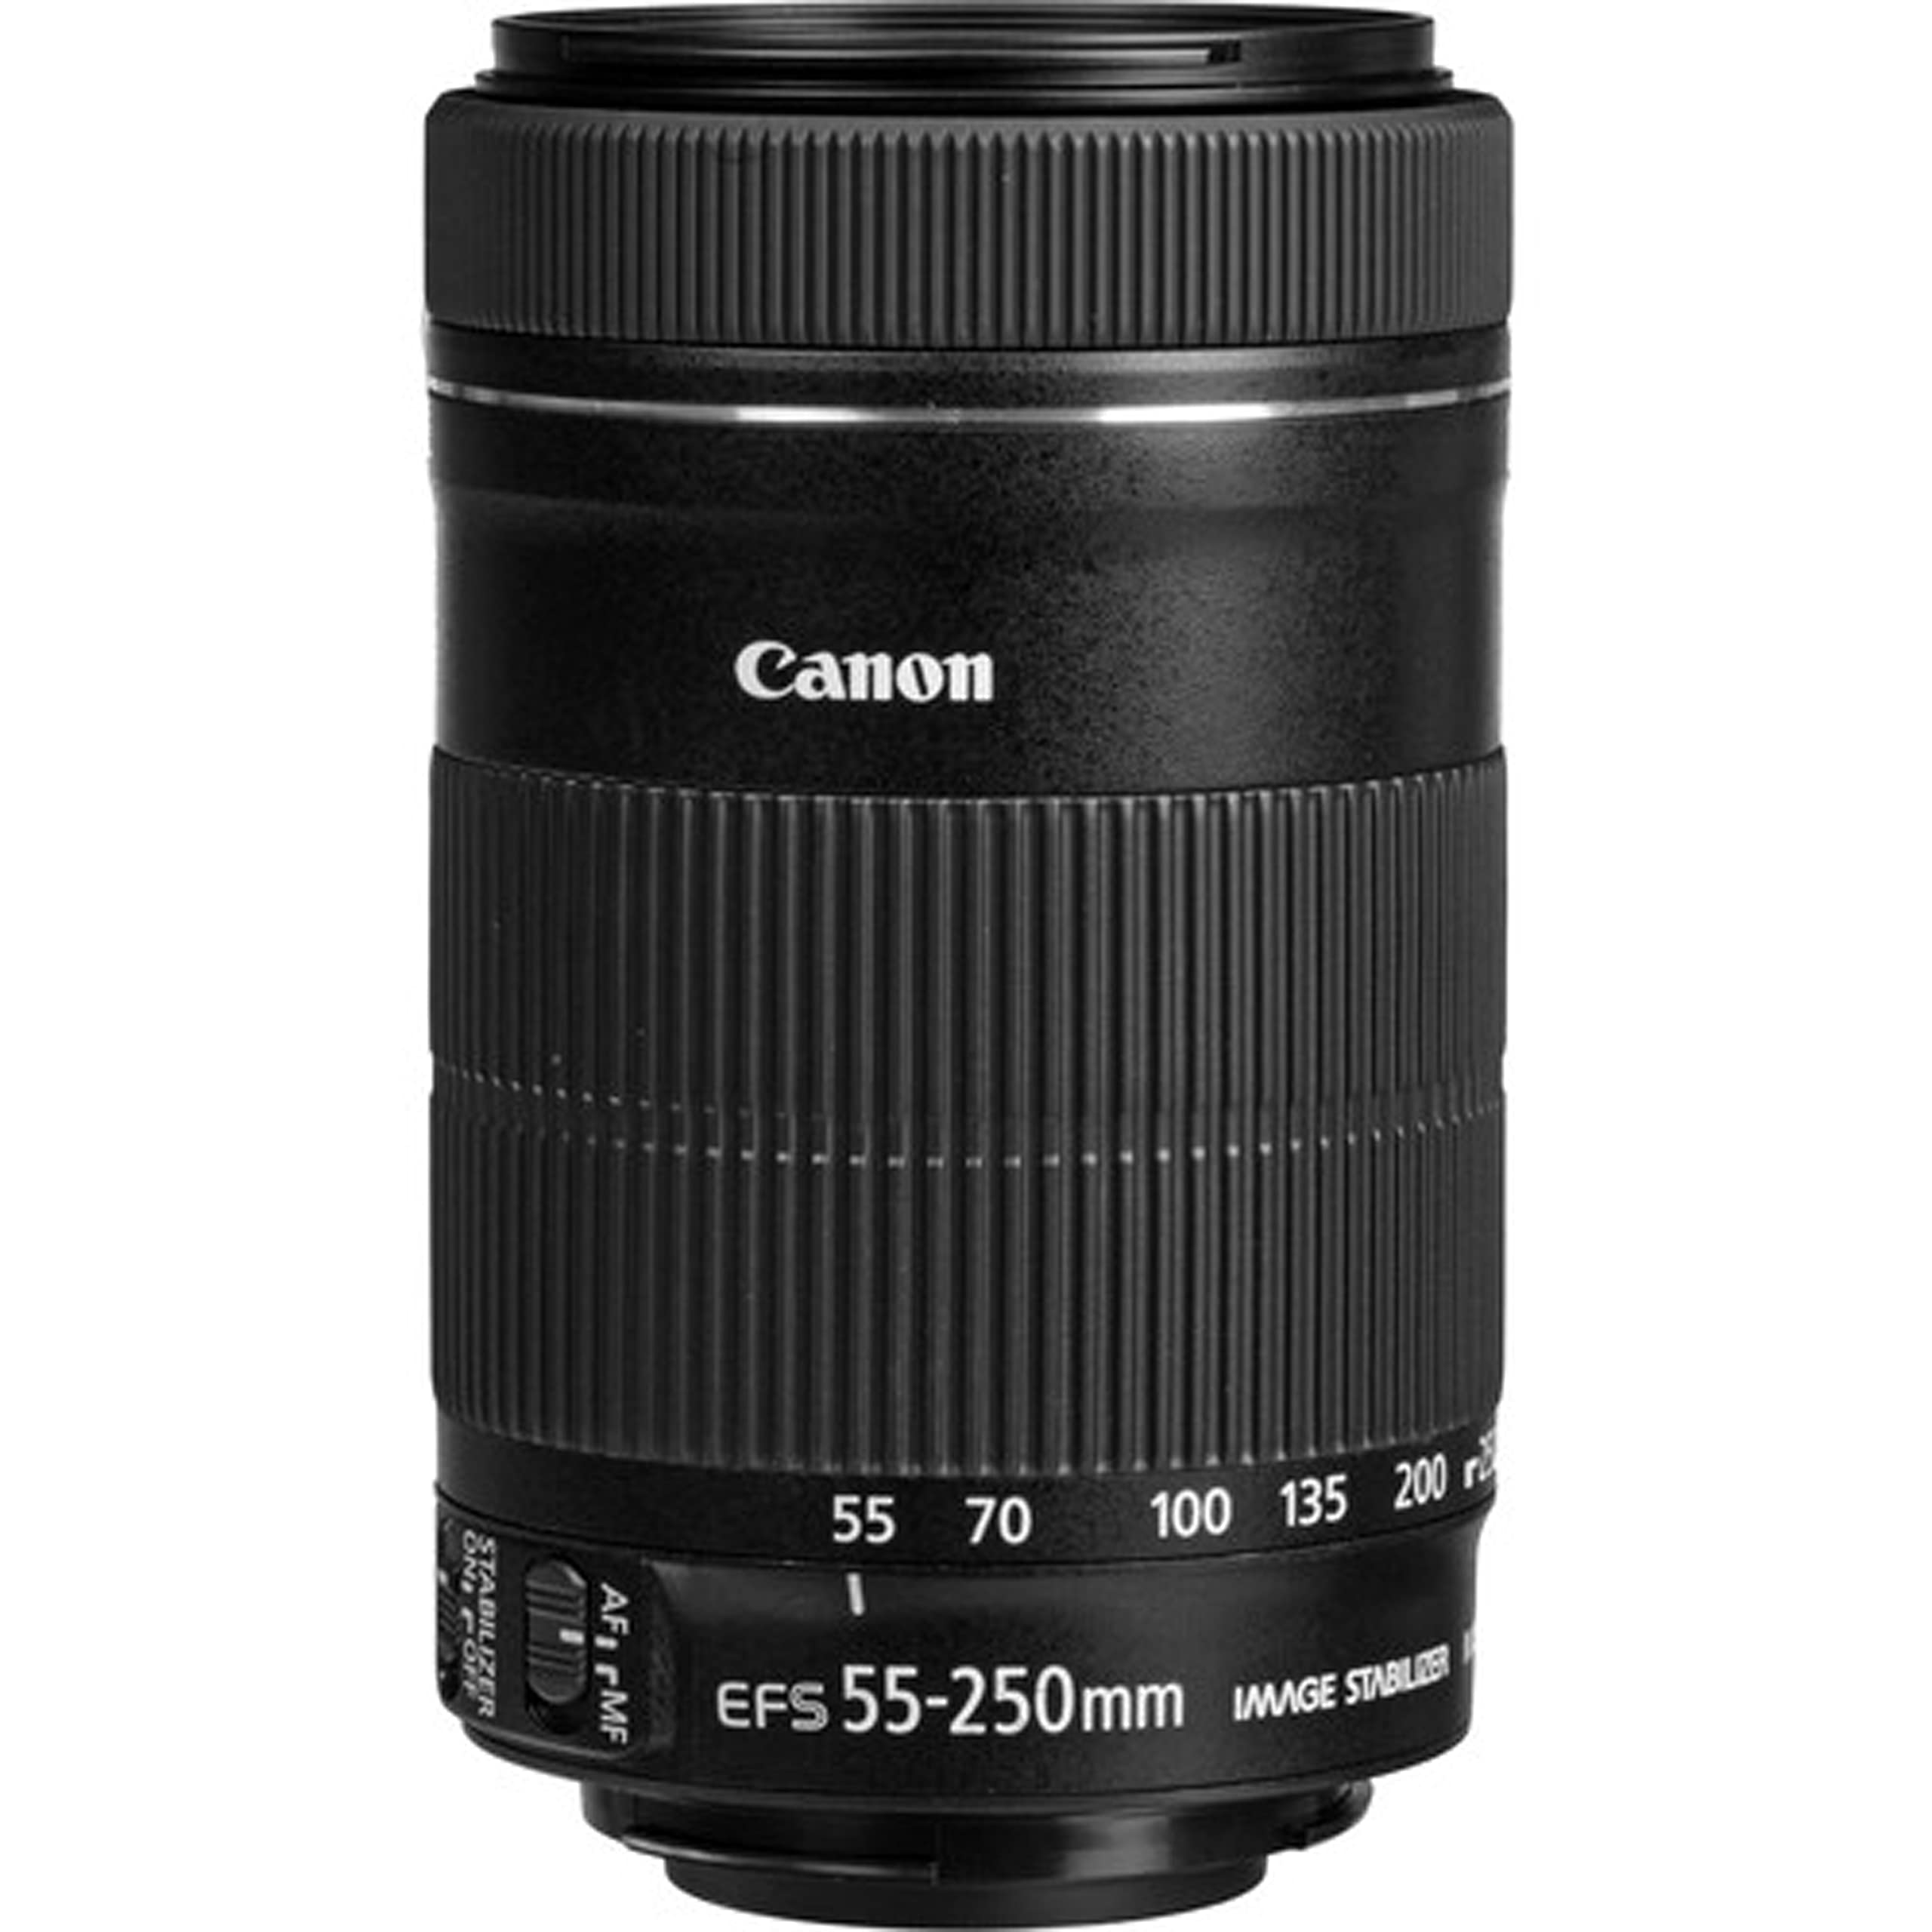 Canon EOS Rebel T8i DSLR Camera w EF-S 18-55mm f/4-5.6 is STM Lens + EF-S 55-250mm f/4-5.6 is STM Lens + 2X 64GB Memory + Case + Filters + Tripod + More (35pc Bundle)